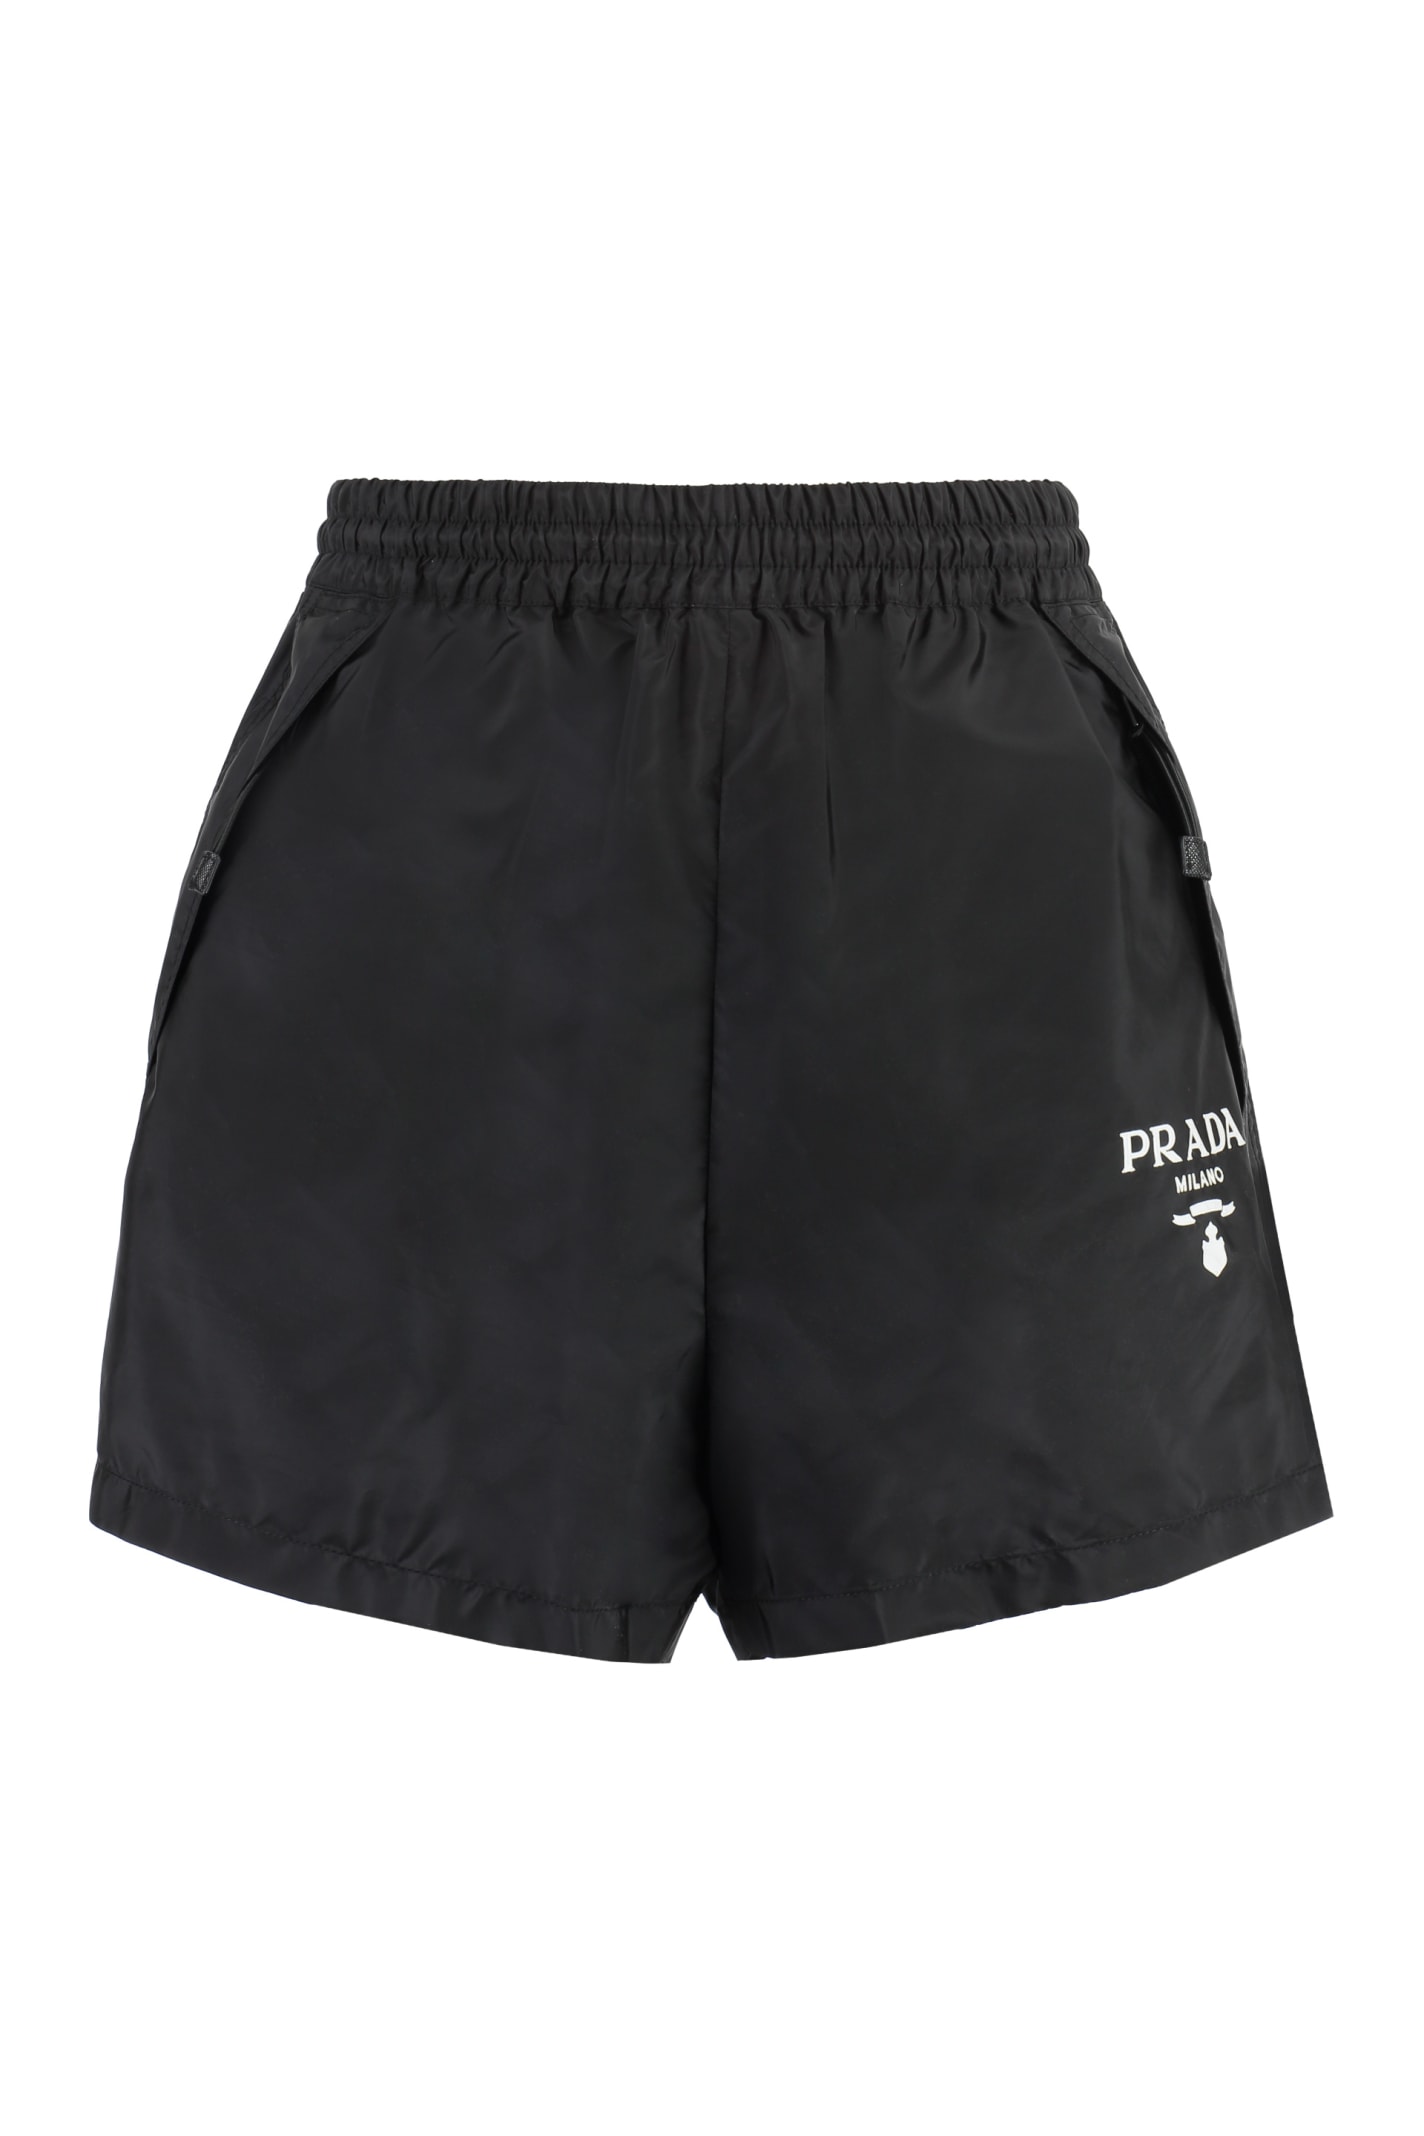 Prada Nylon Shorts